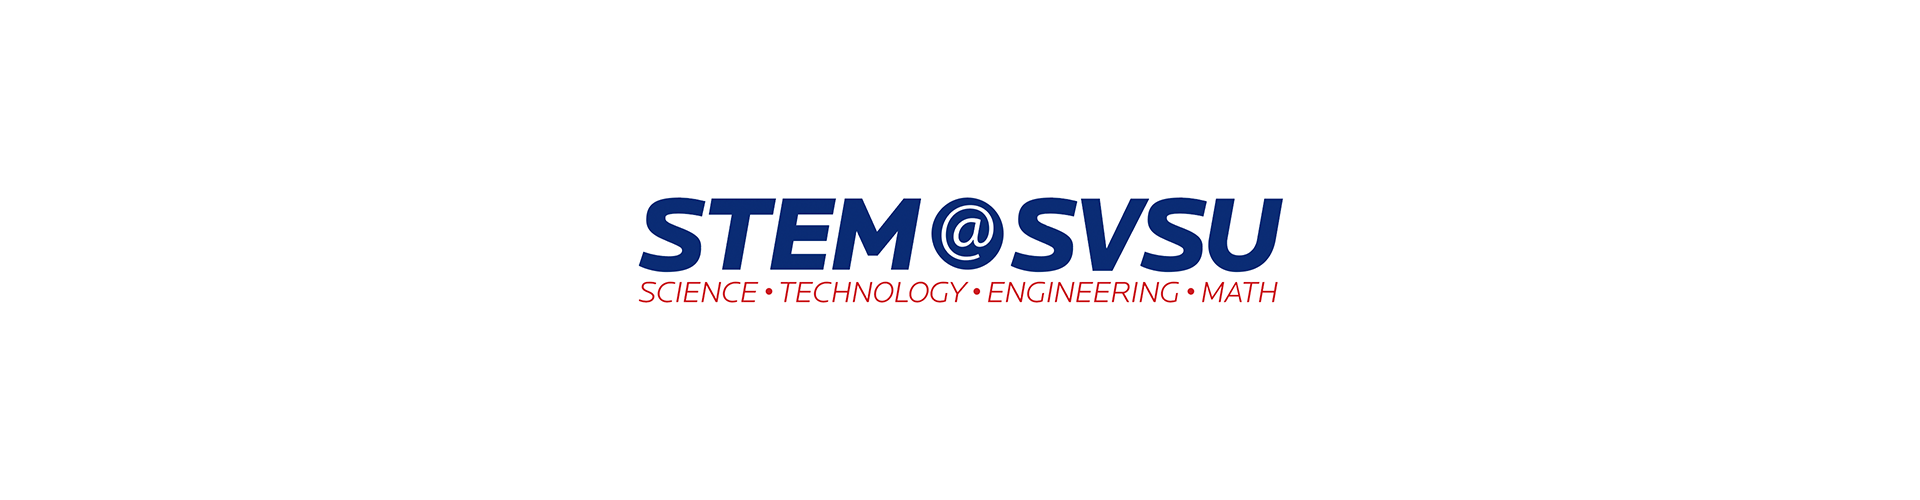 STEM at SVSU logo